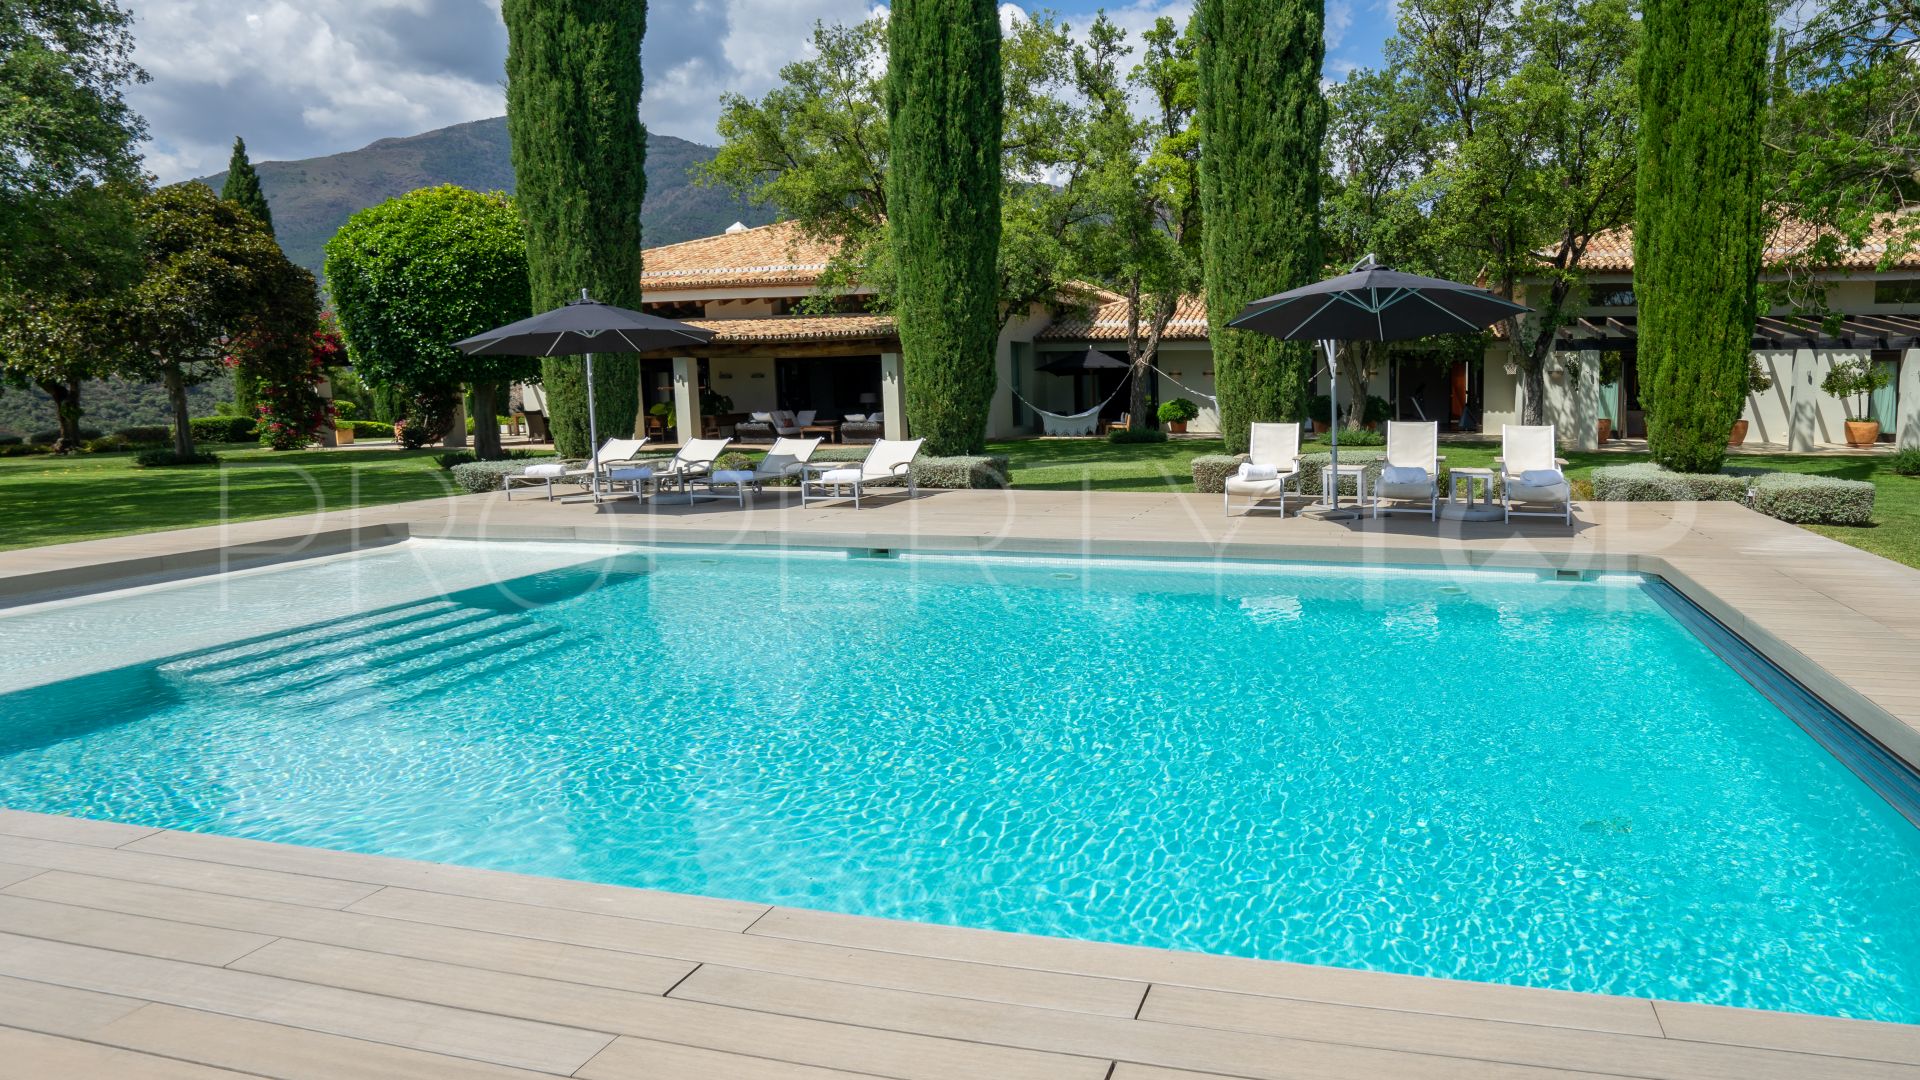 8 bedrooms villa in La Zagaleta for sale